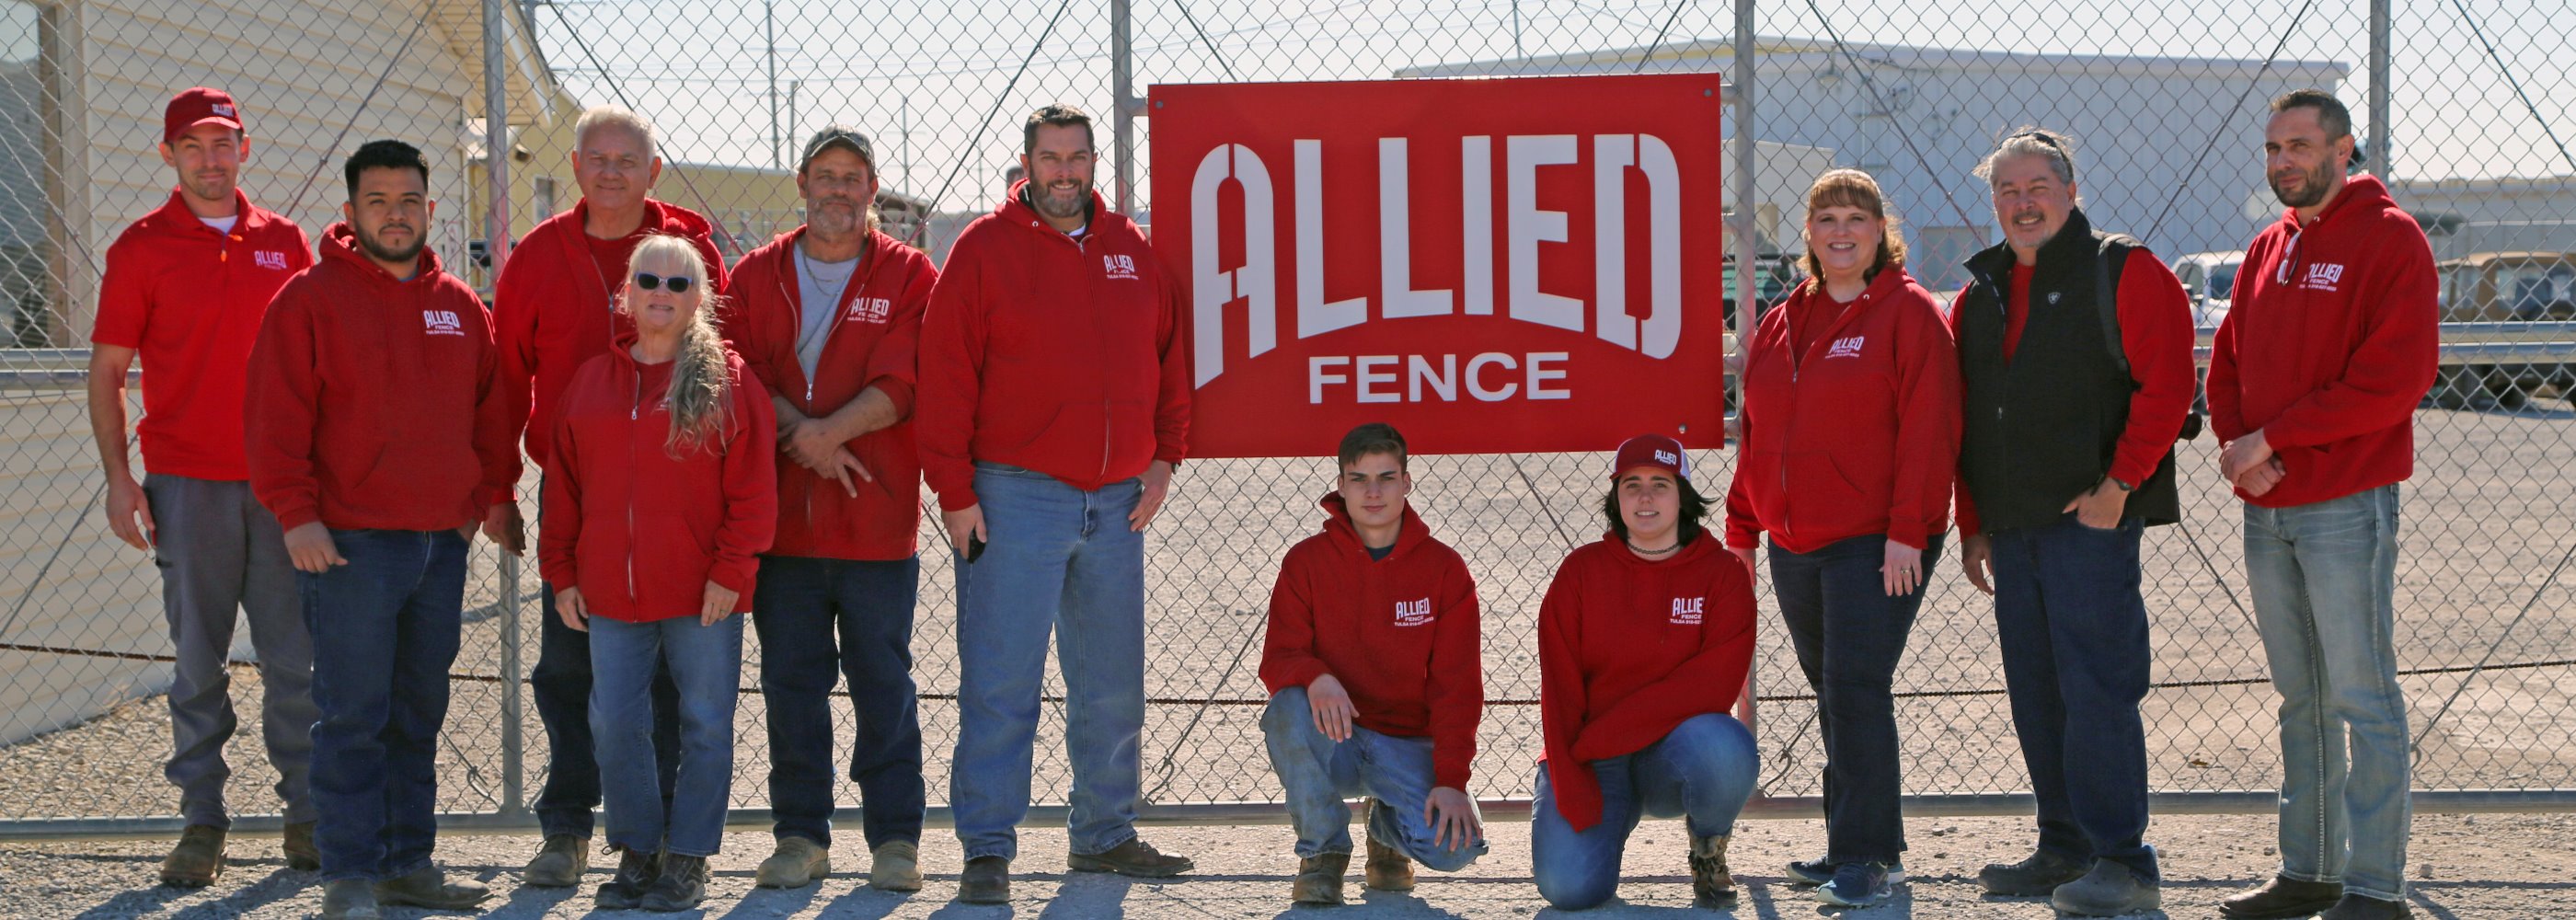 Allied Fence Co. of Tulsa - Tulsa, Oklahoma fence company